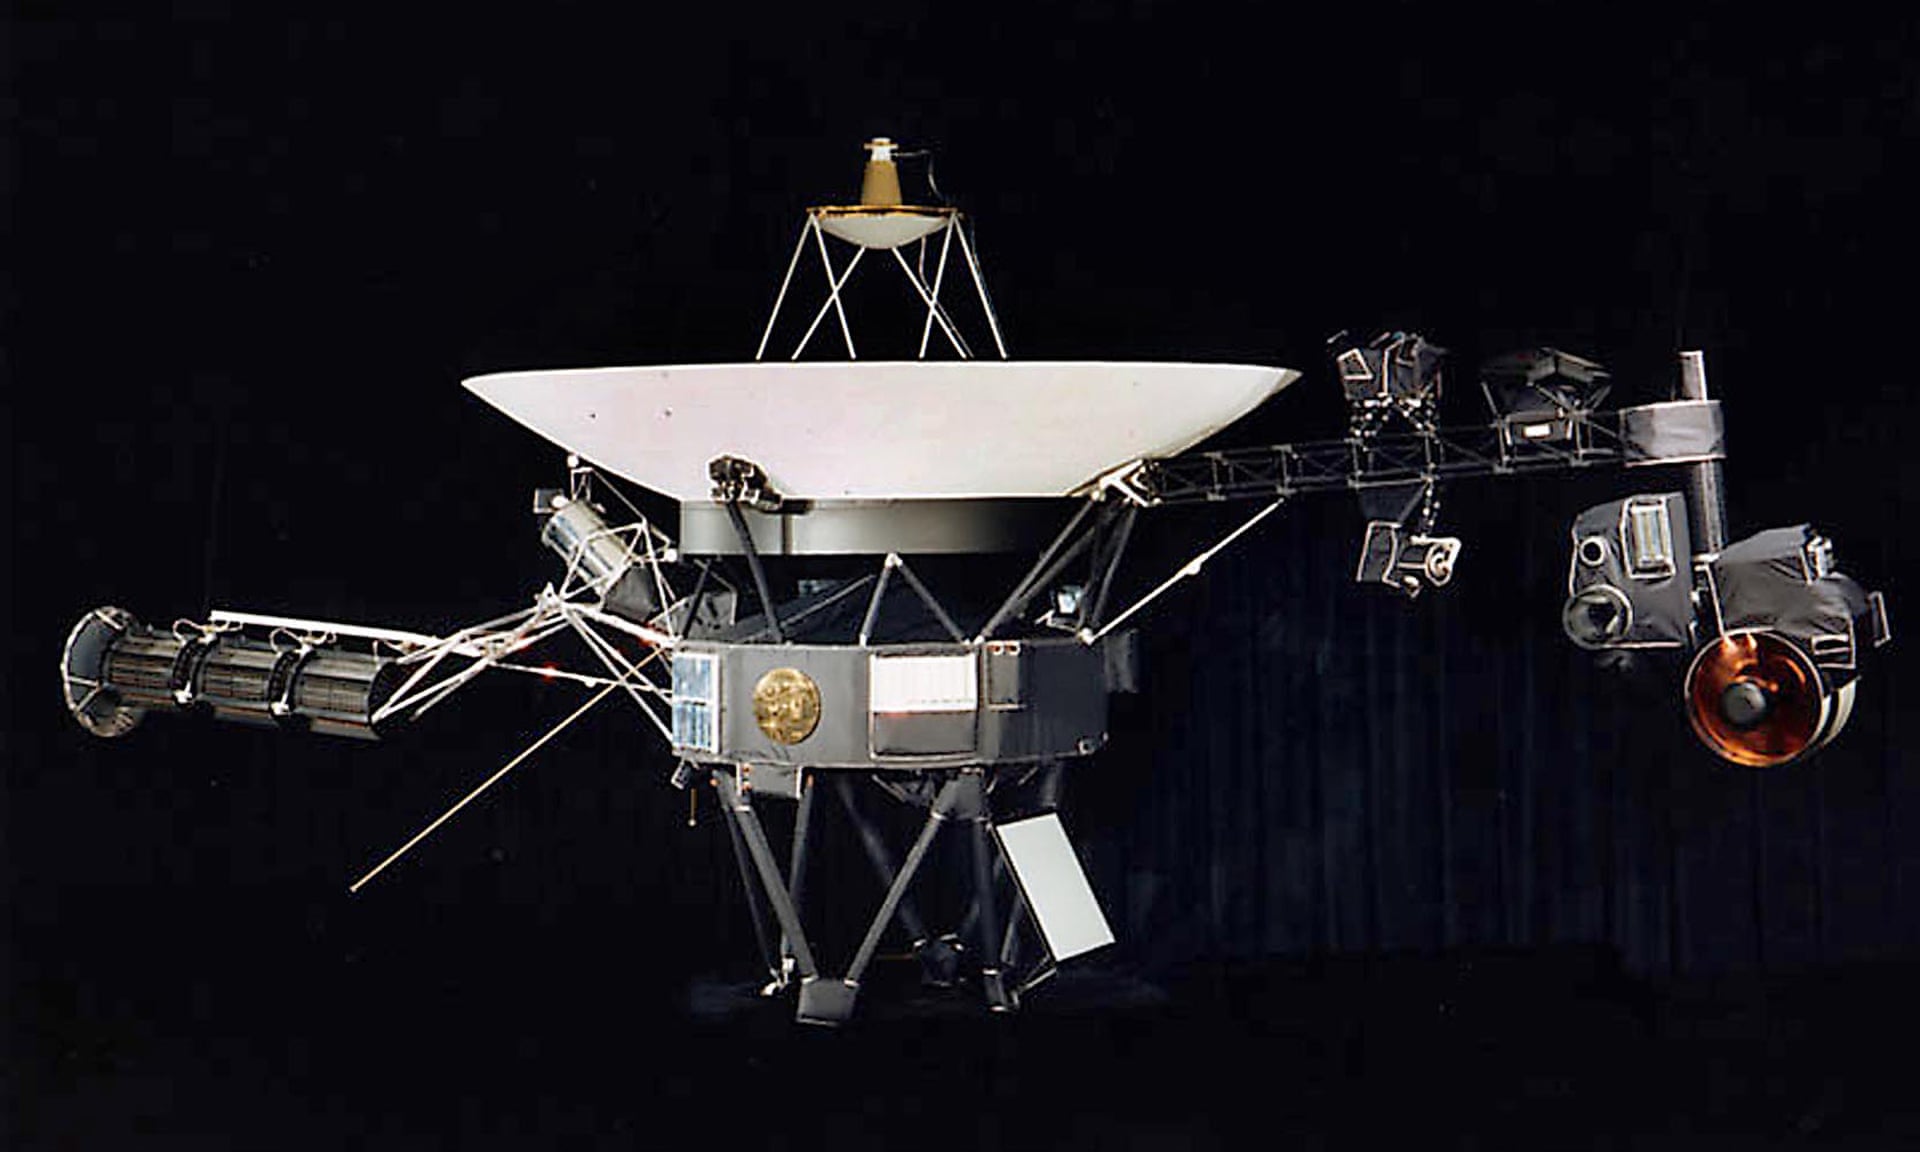 Mô hình của tàu vũ trụ Voyager. Ảnh: Nasa/AFP via Getty Images.